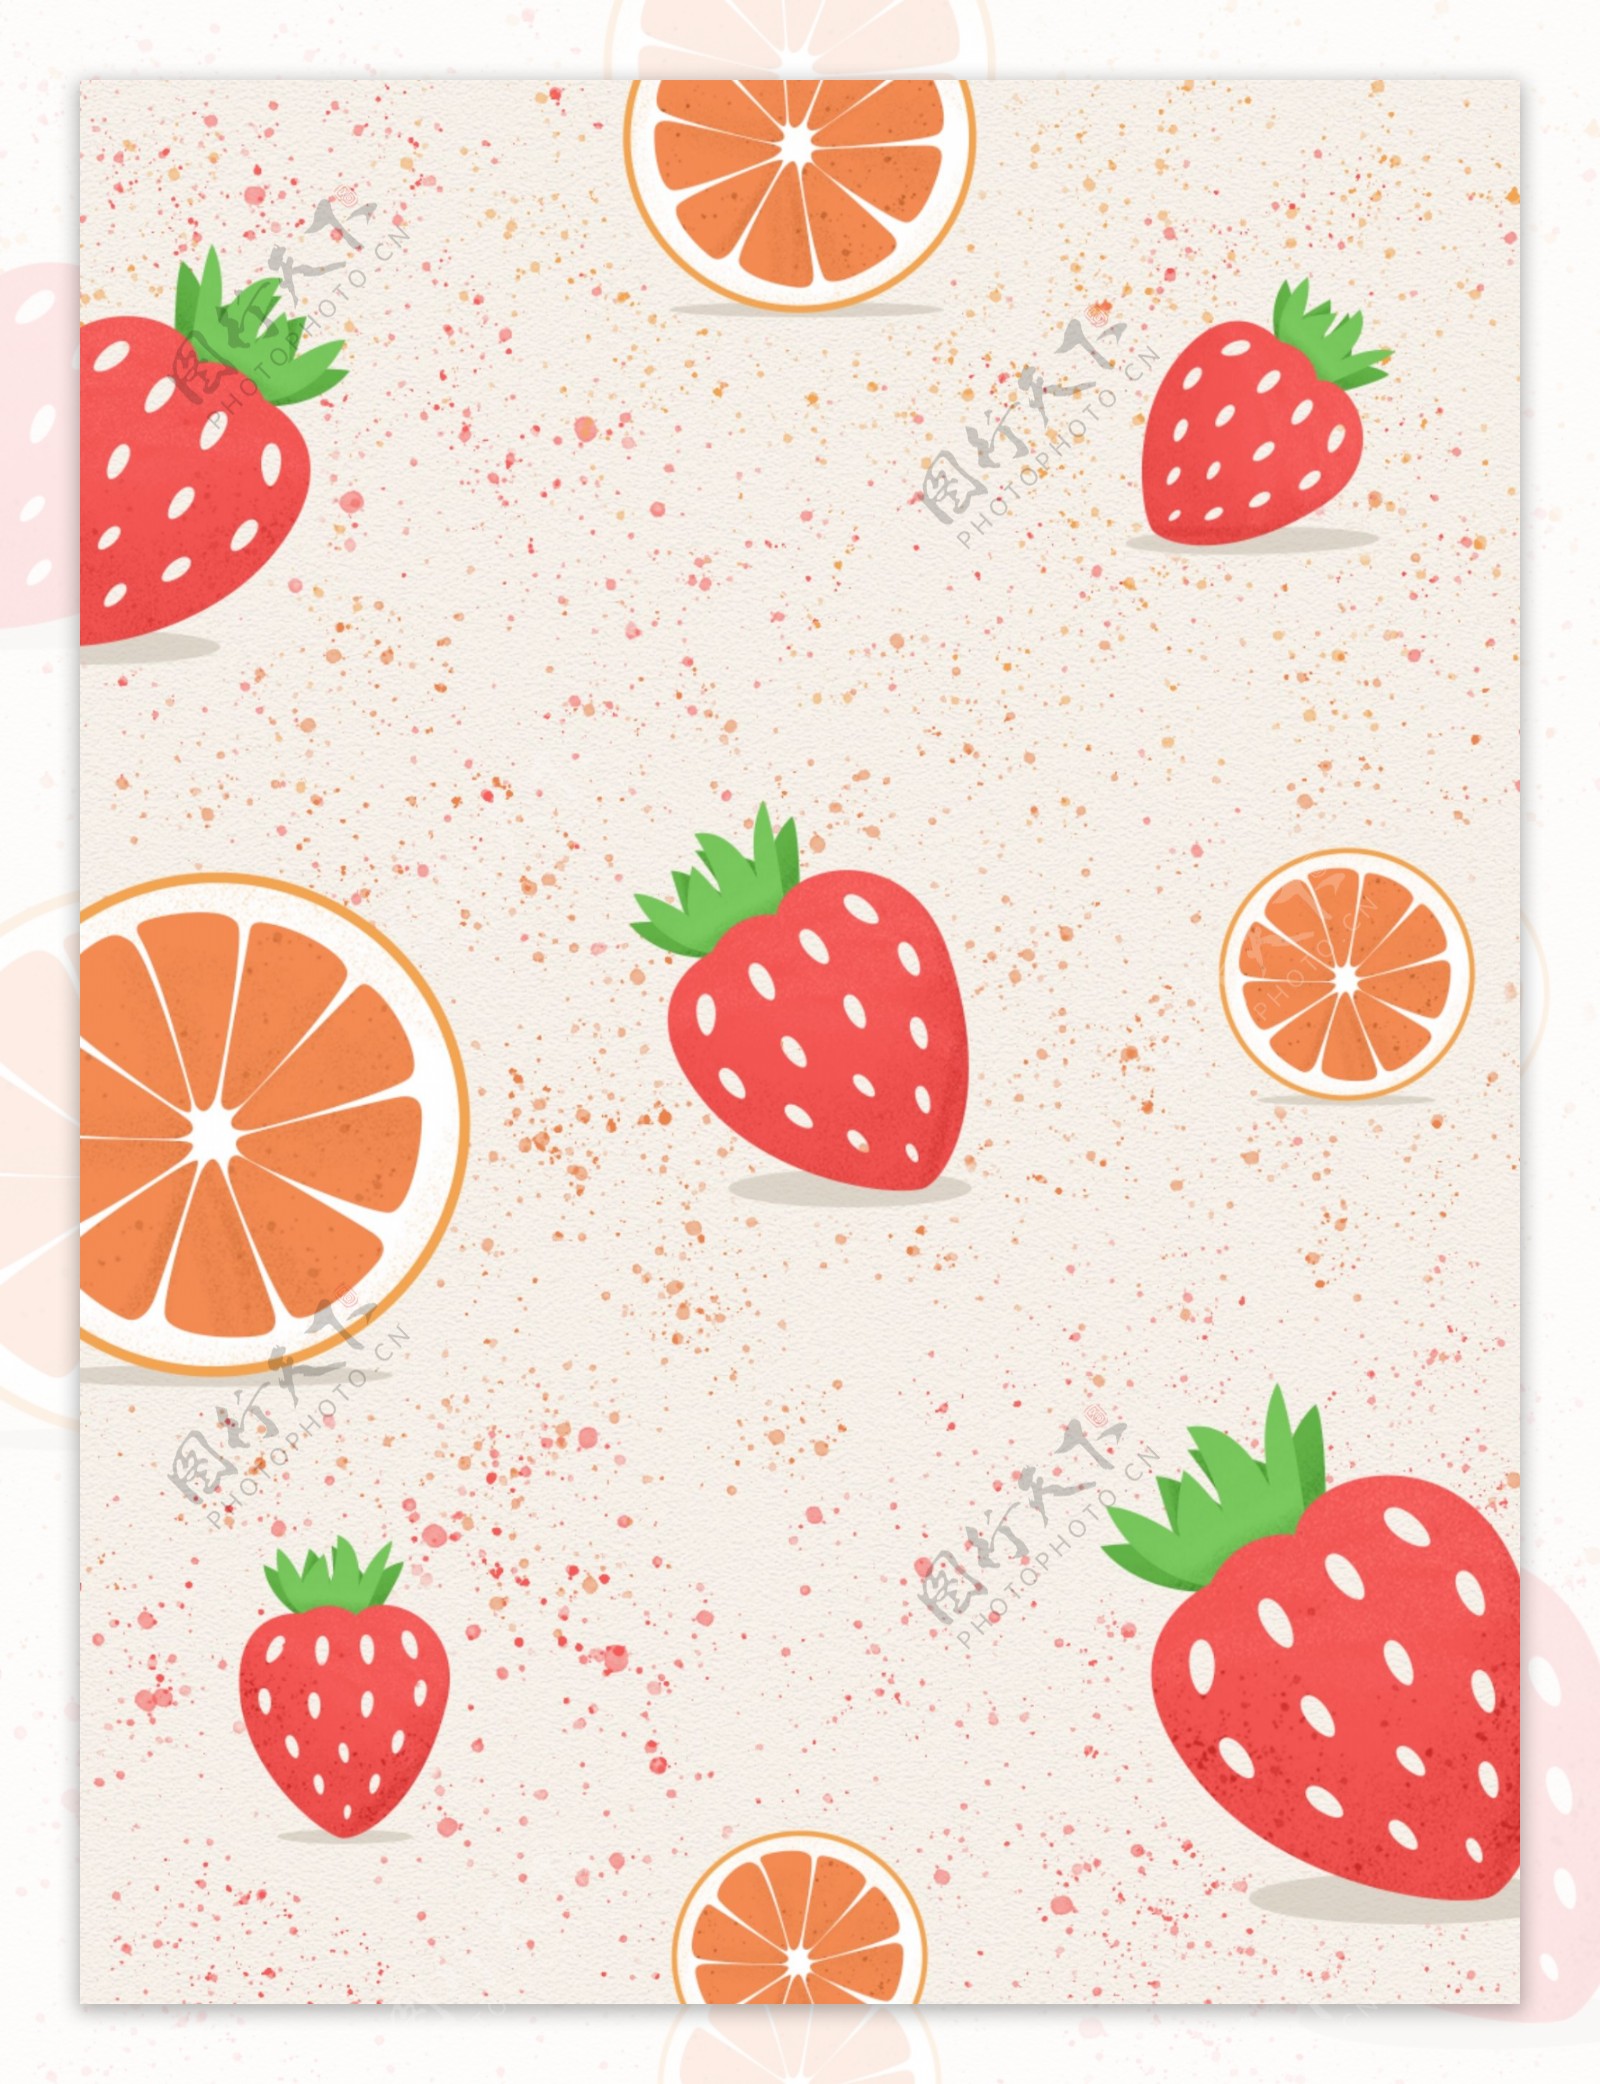 草莓橙子水果背景图